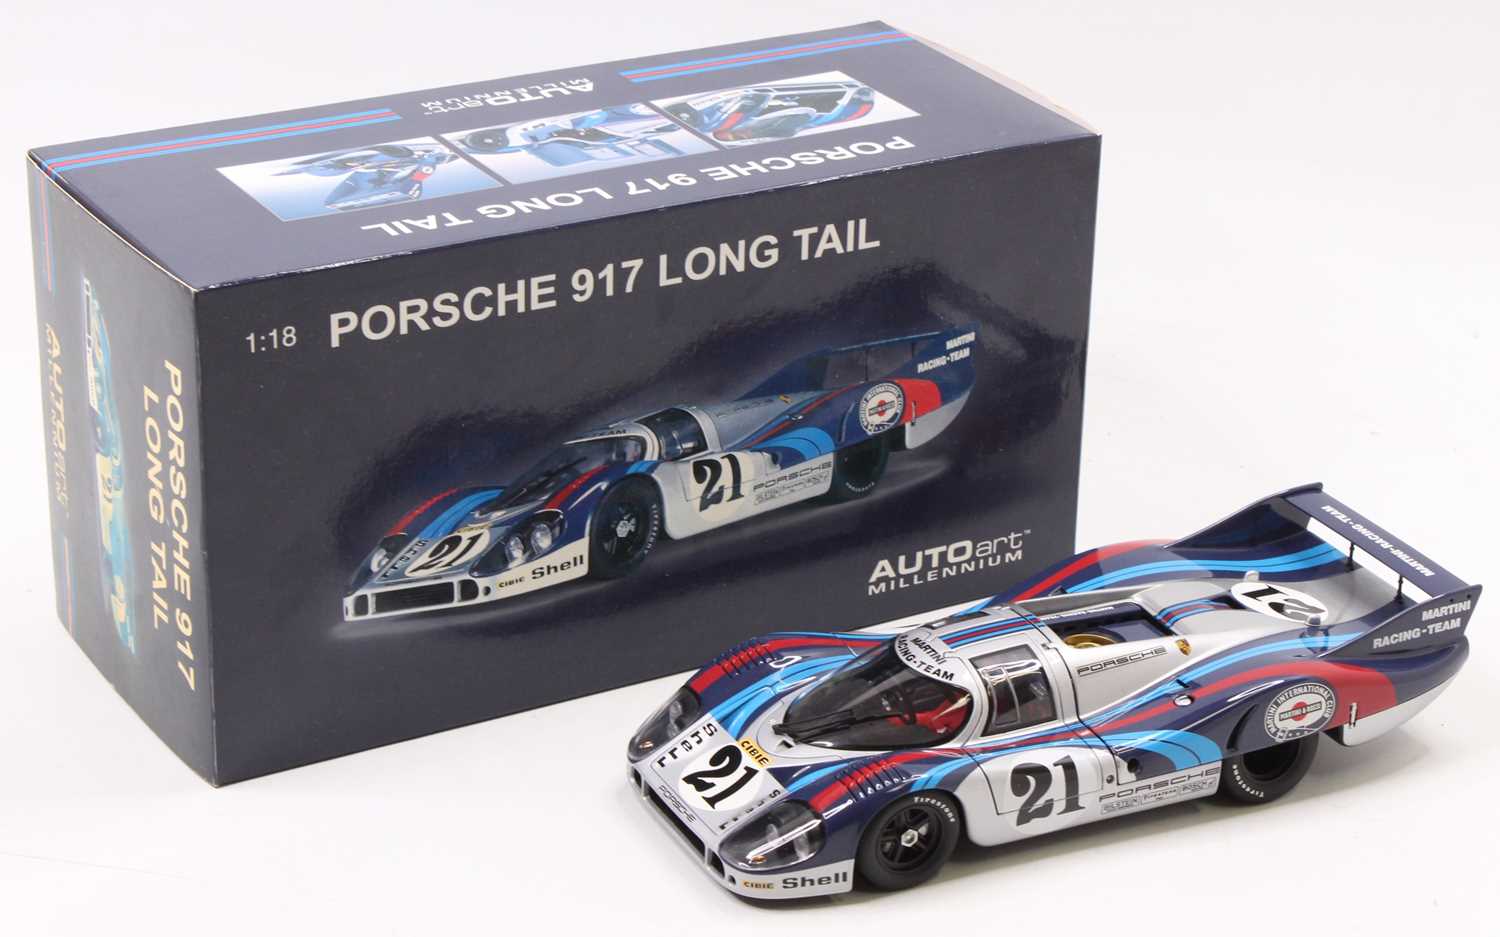 An Autoart Millennium No. 87171 1/18 scale boxed diecast model of a Porsche 917L Le Mans race car